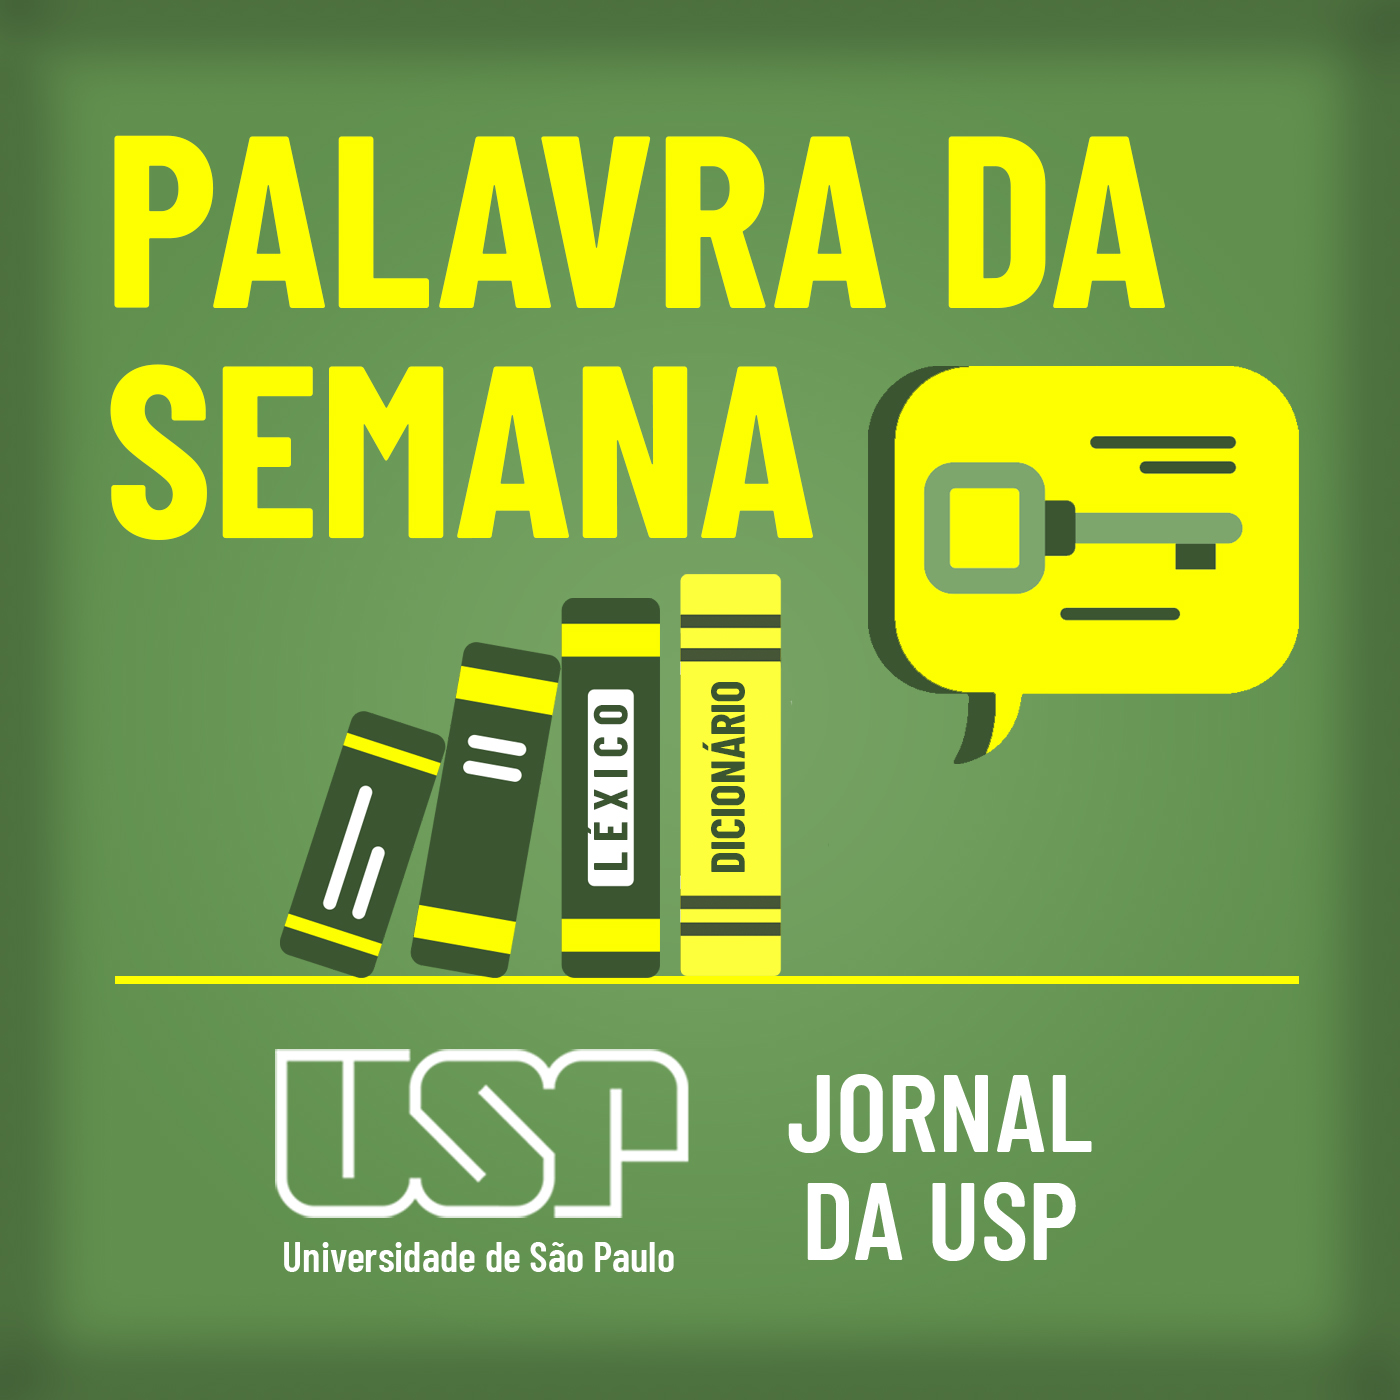 "Vagabundo" entered the Portuguese language in the 14th century - Jornal da USP.